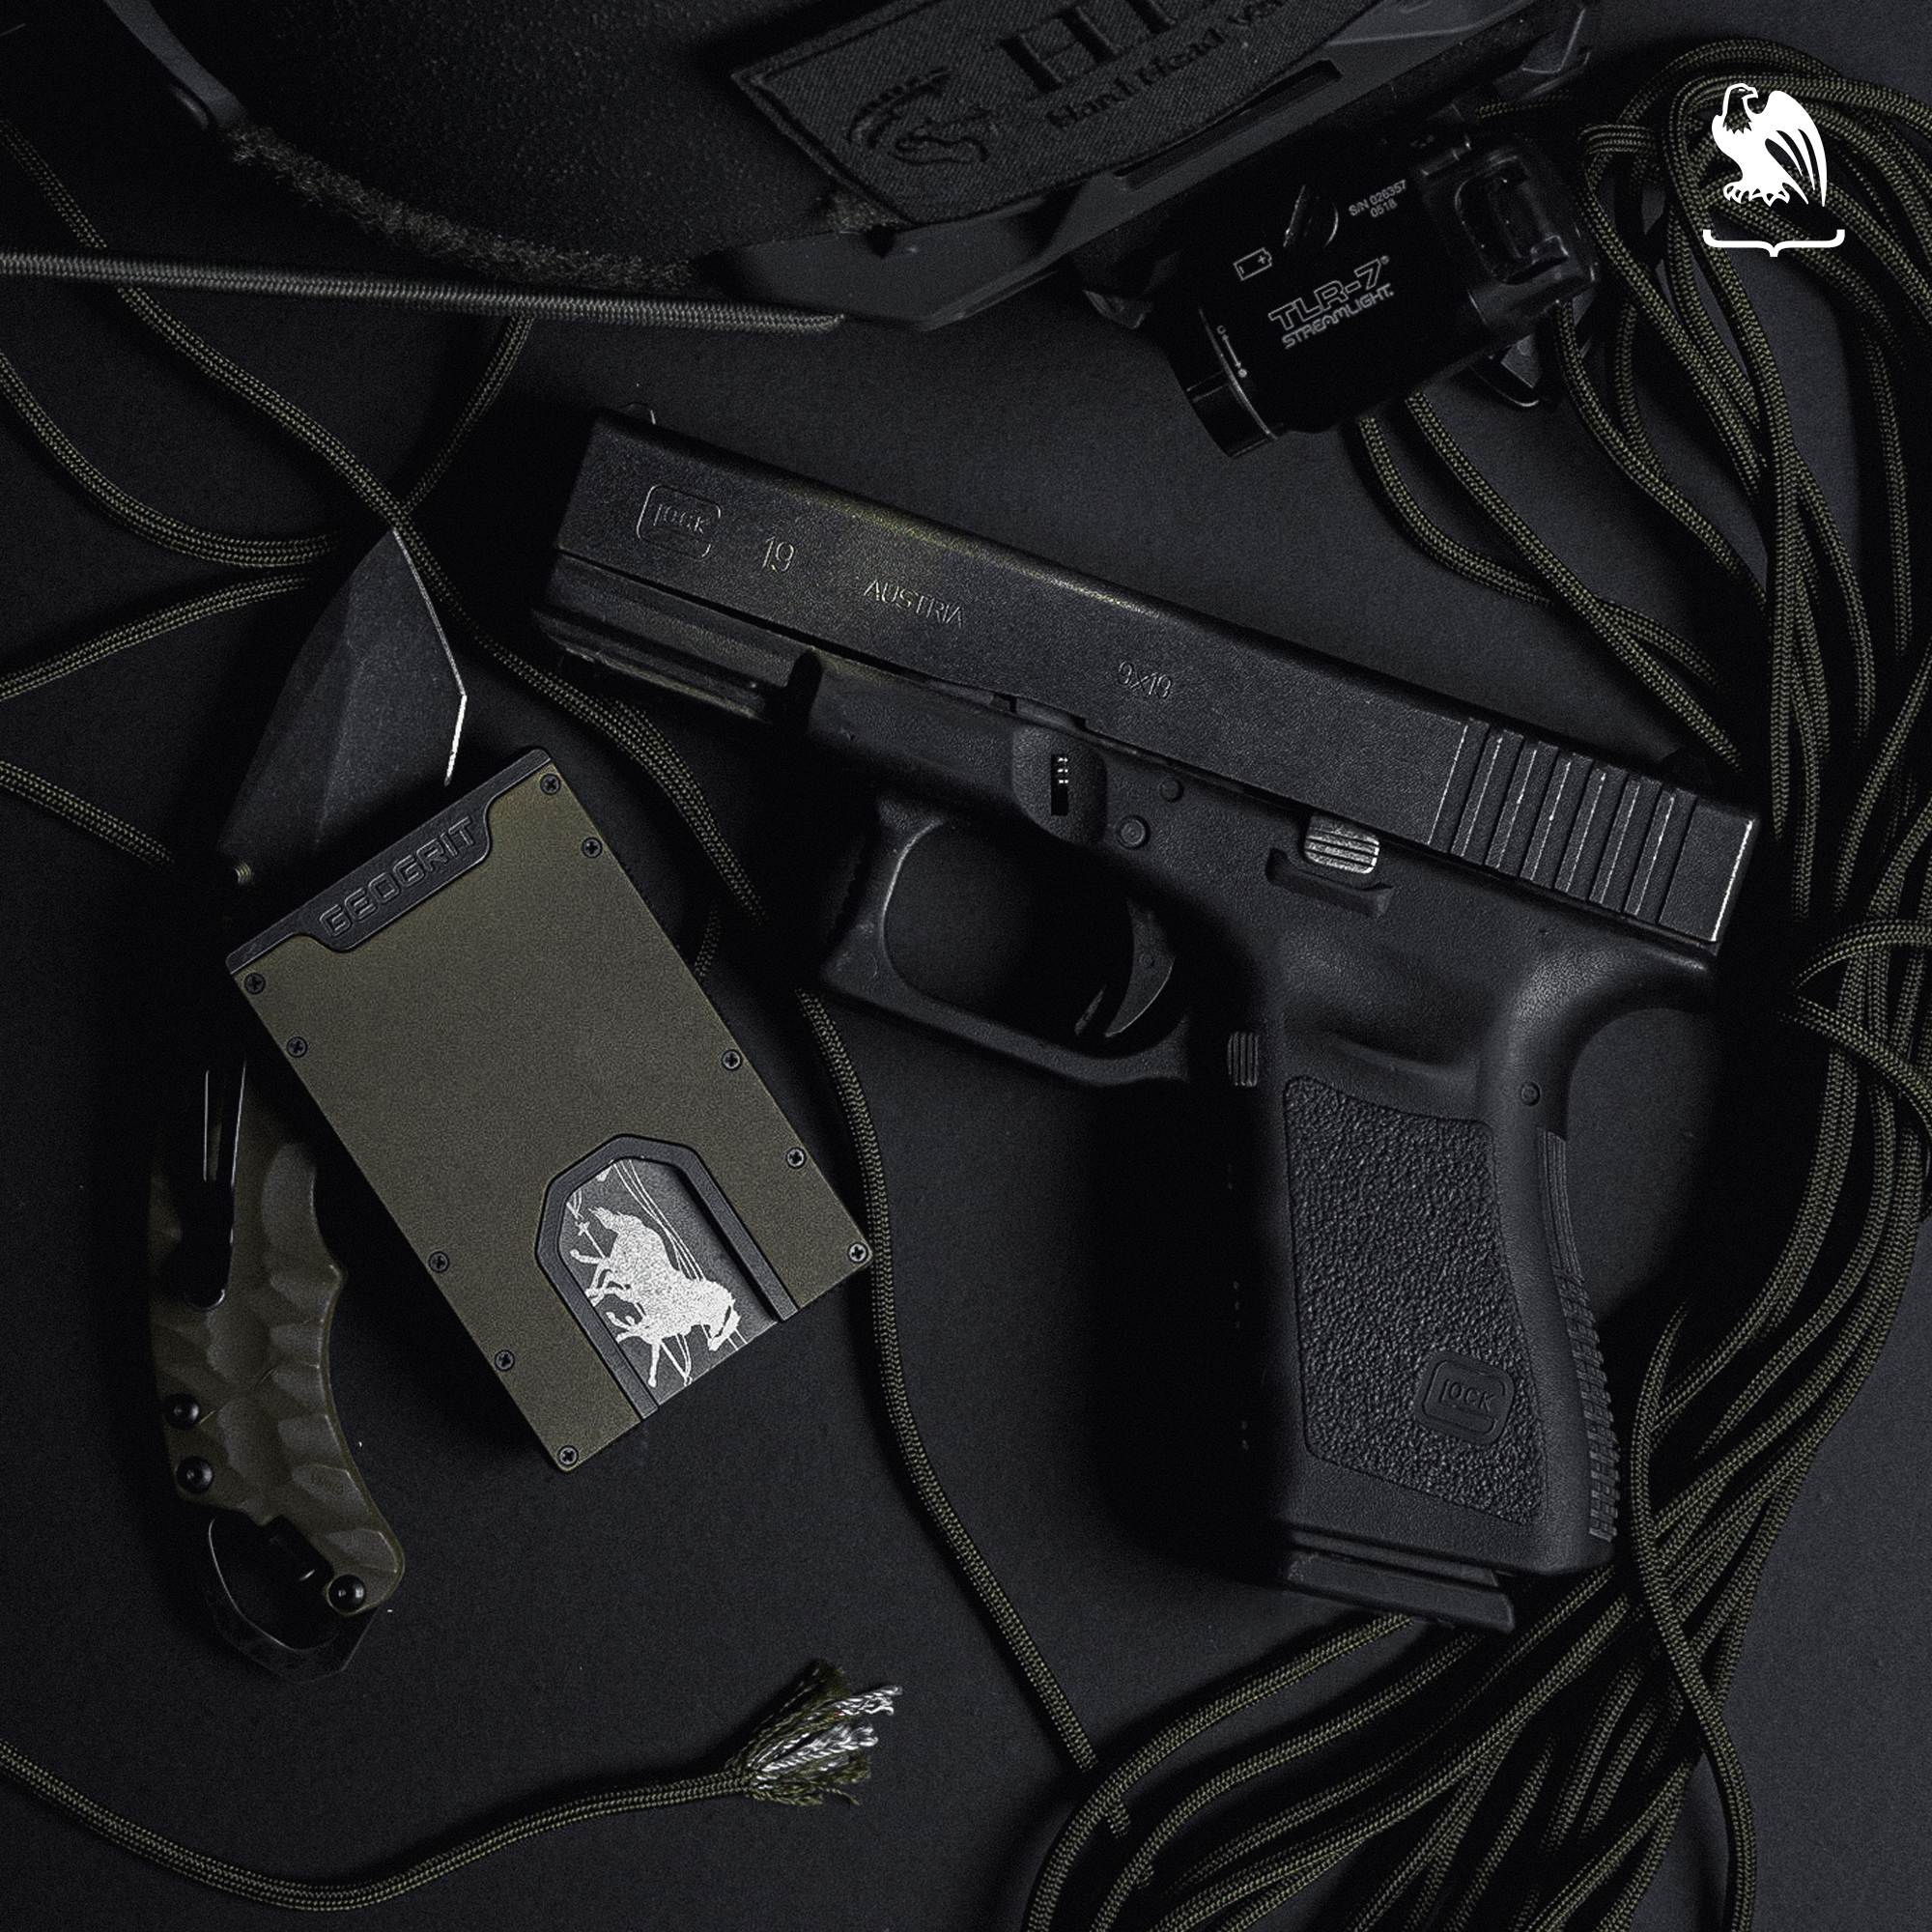 Glock 19 handgun and holster